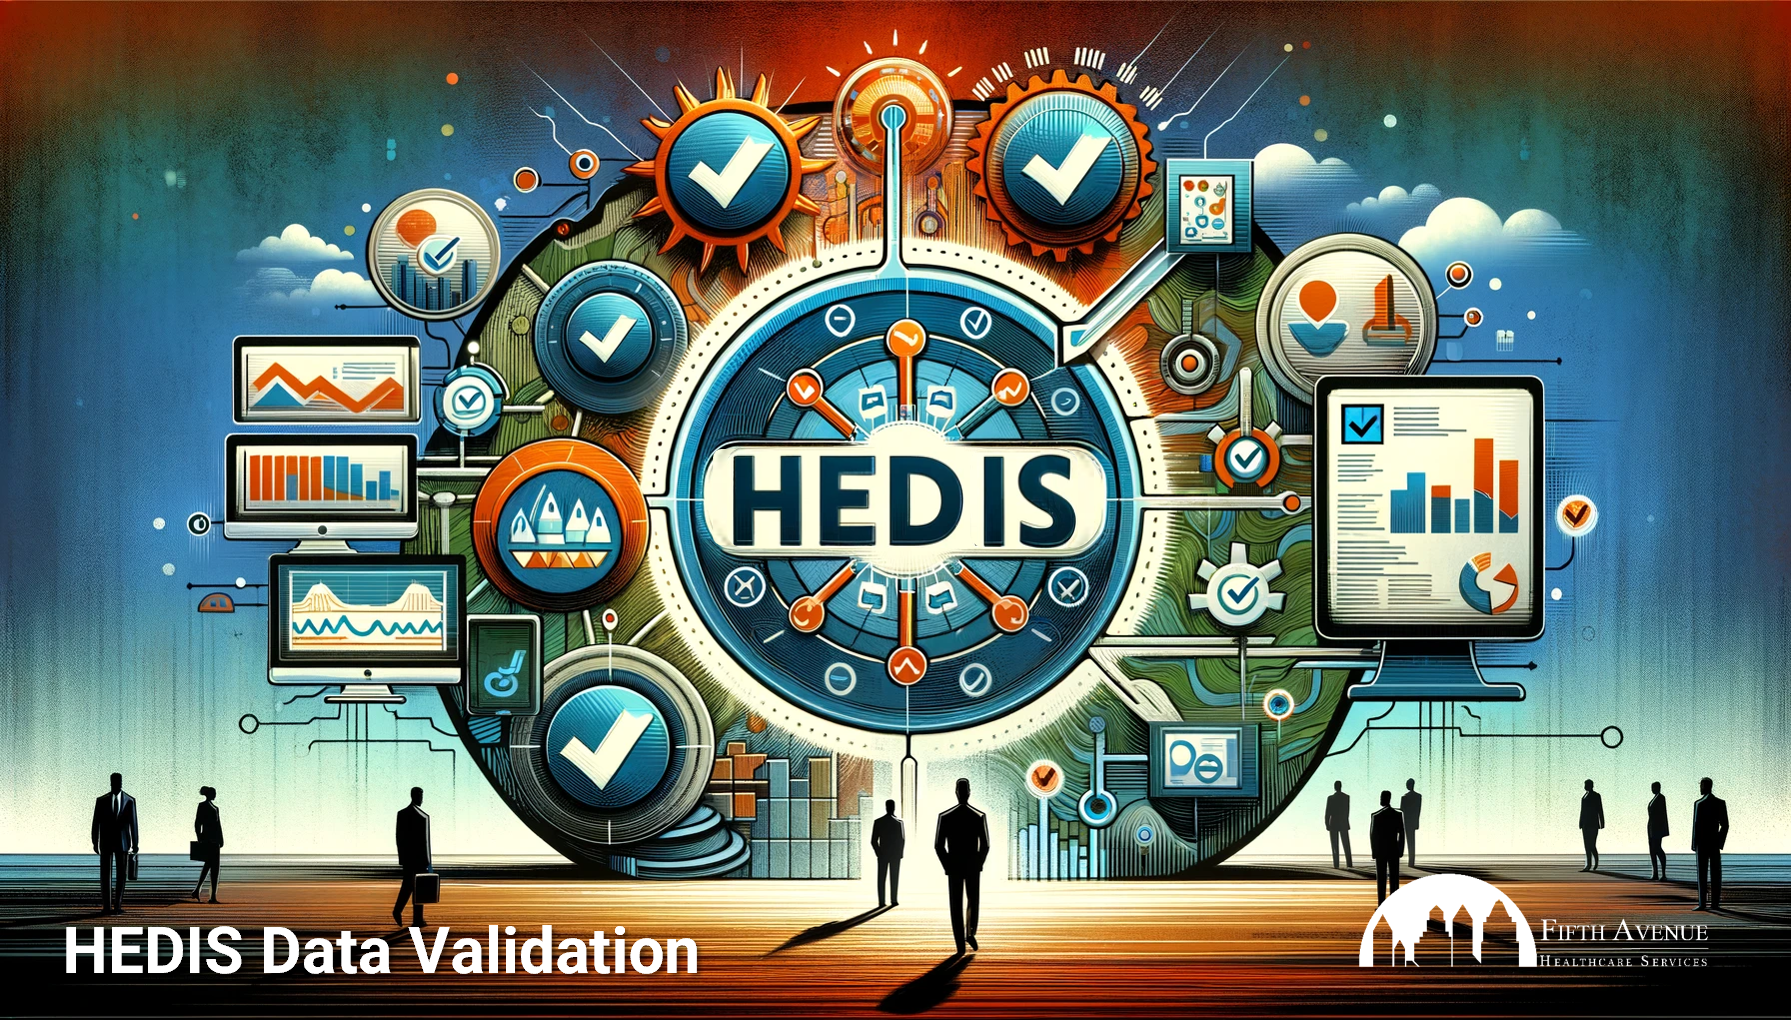 HEDIS Data Validation